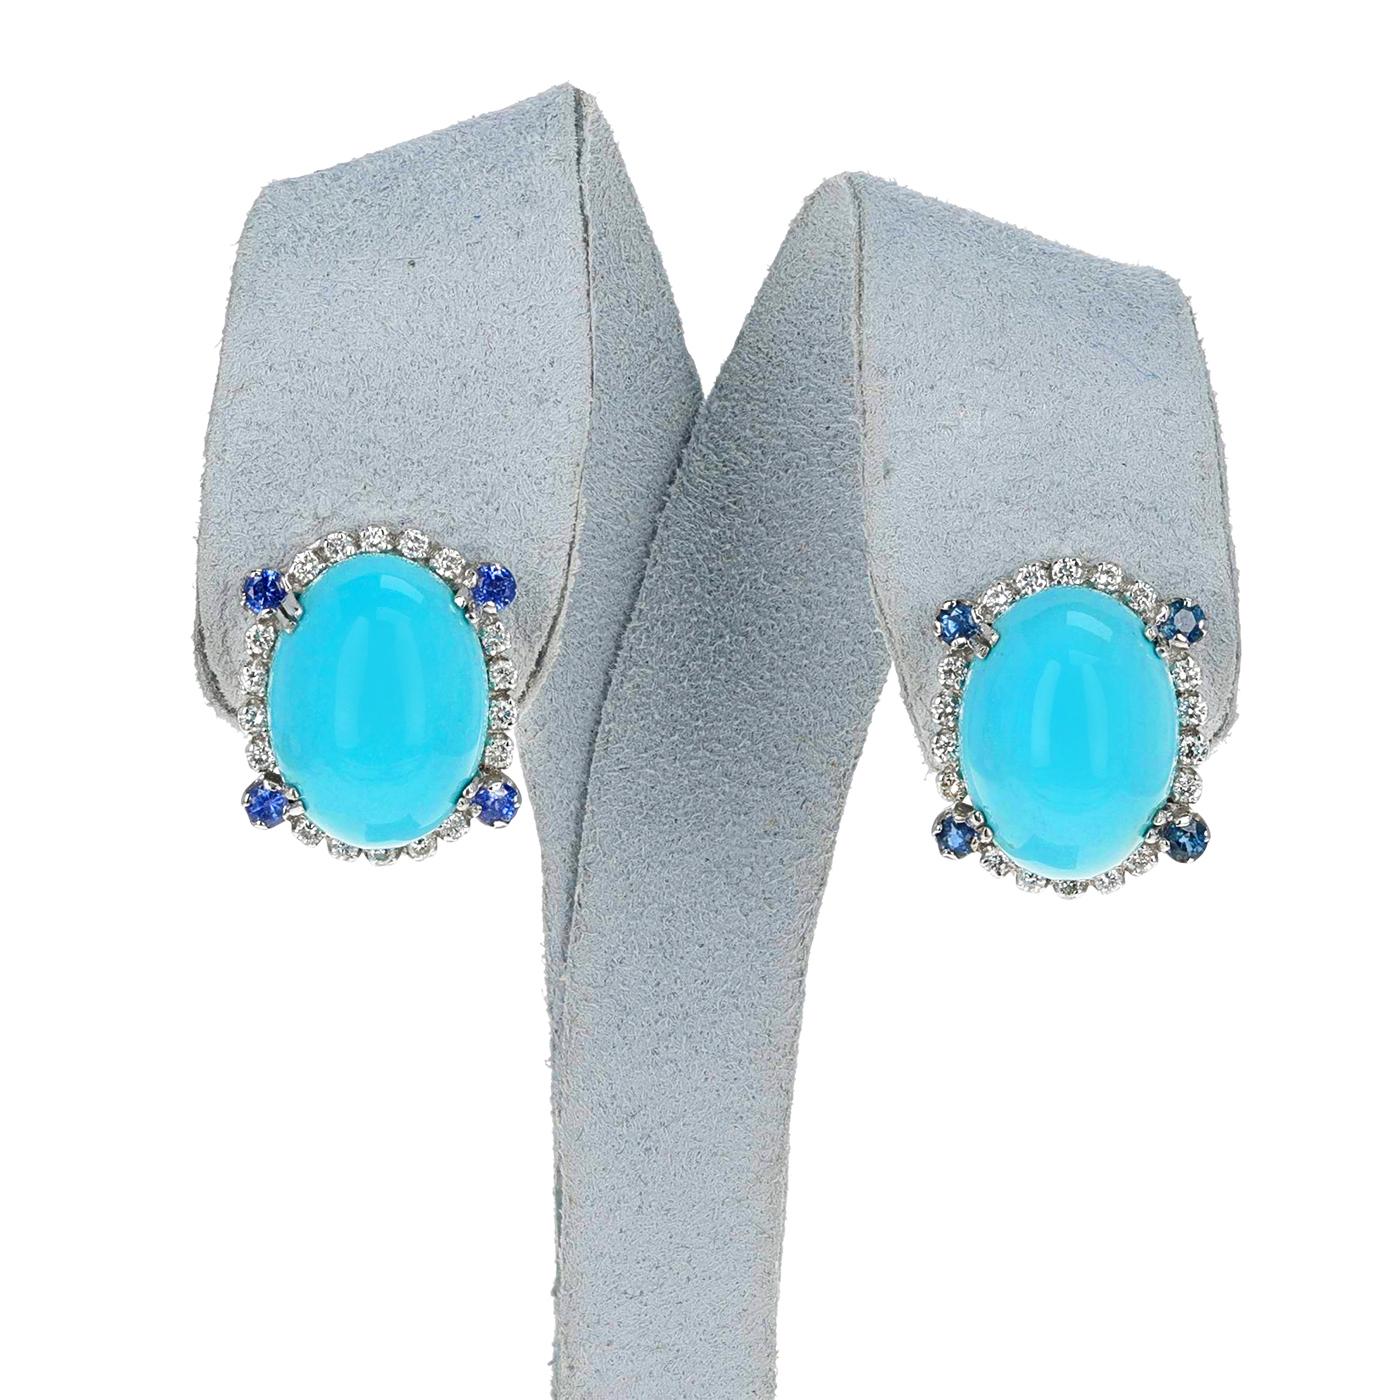 Ovale Cabochon-Ohrringe aus Türkis mit Diamanten und Saphiren, 18k. Das Gesamtgewicht der Diamanten beträgt 0,80 Karat und die Saphire wiegen 0,40 Karat. Die Ohrringe wiegen 11,88 Gramm und haben die Maße 0,75